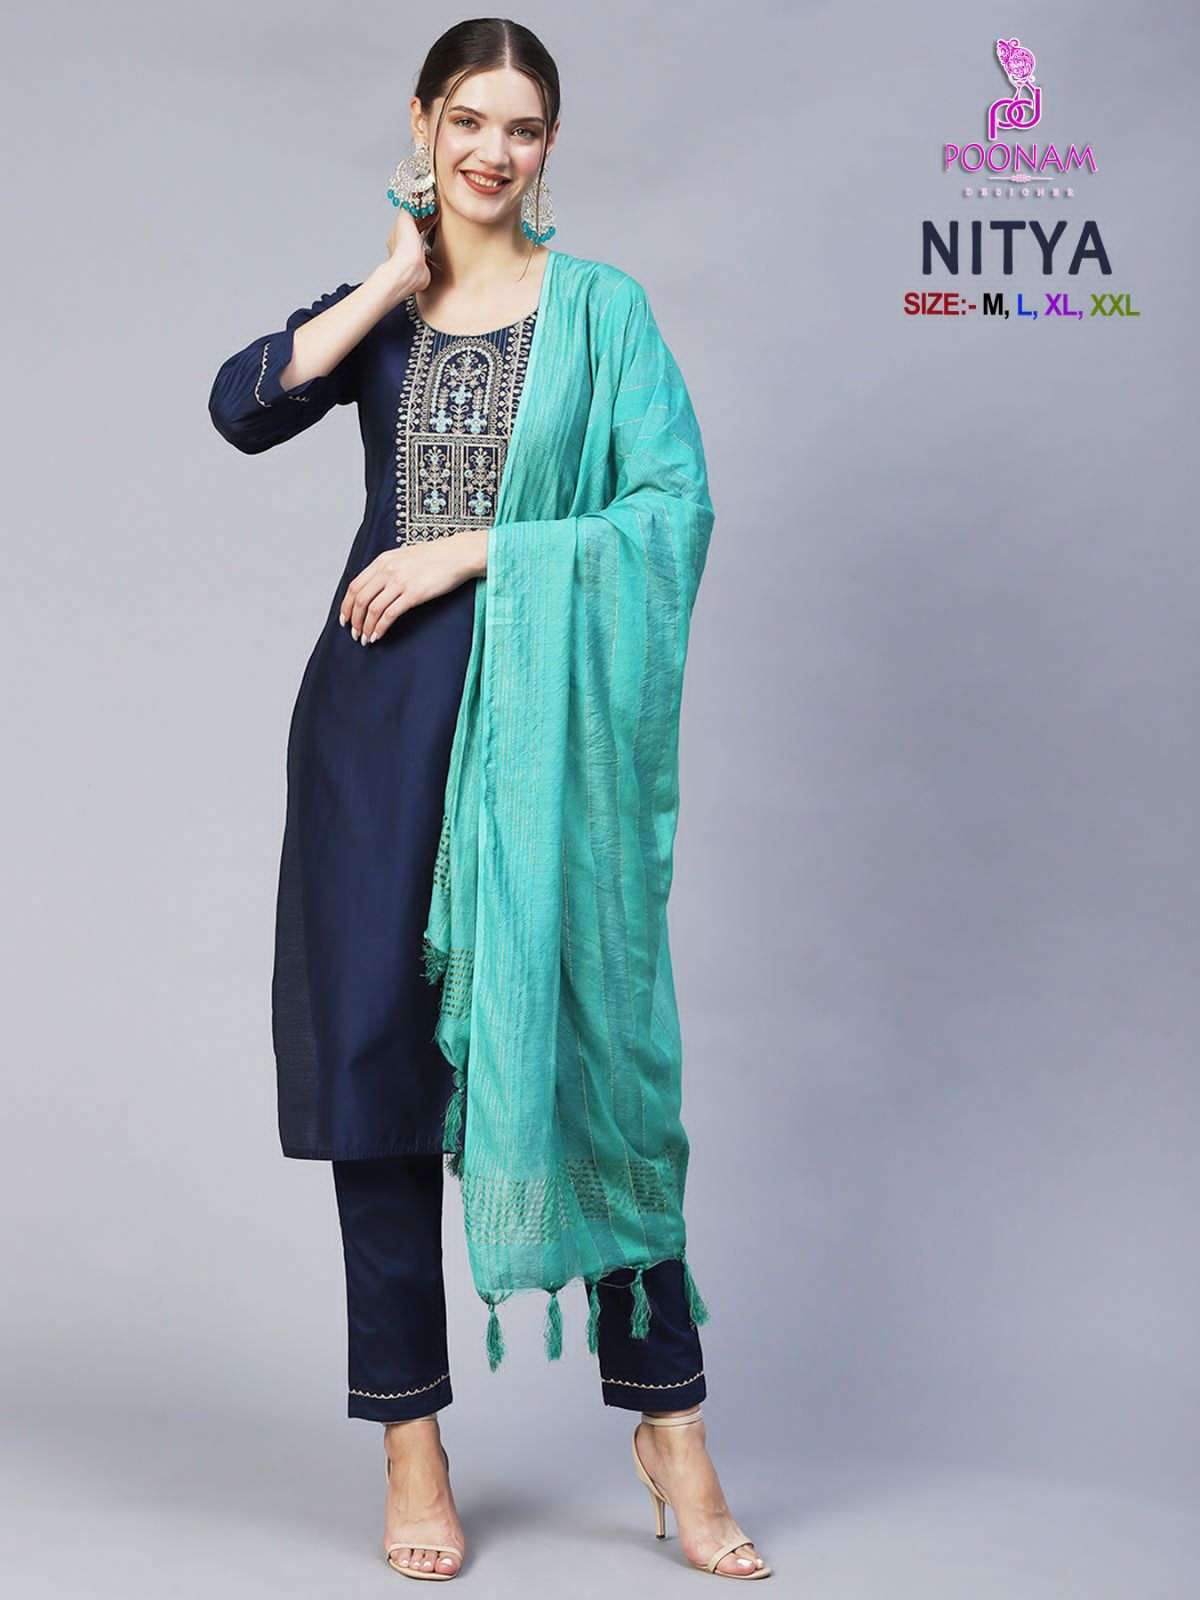 poonam nitya series 1001-1004 Cotton blend readymade suit